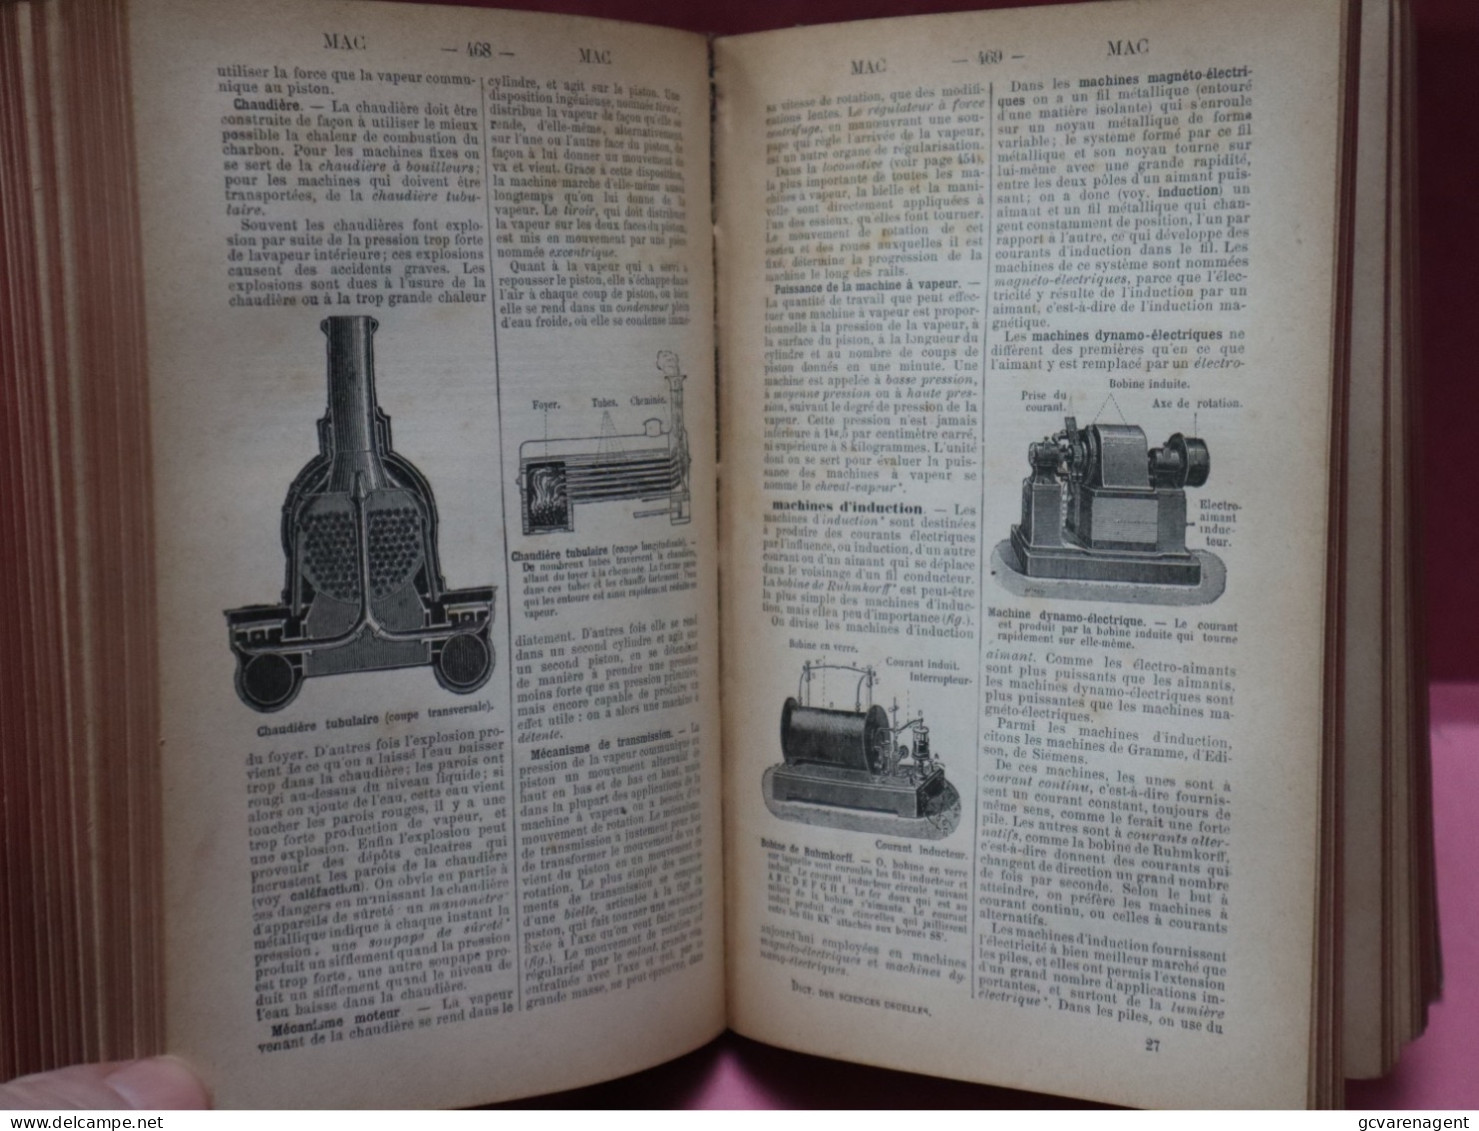 DICTIONNAIRE MANUEL ILLUSTRE DES SCIENCES USUELLES  1897 - BON ETAT - 807 PAGES - 19 X 13 X 4.5 CM  VOIR IMAGES